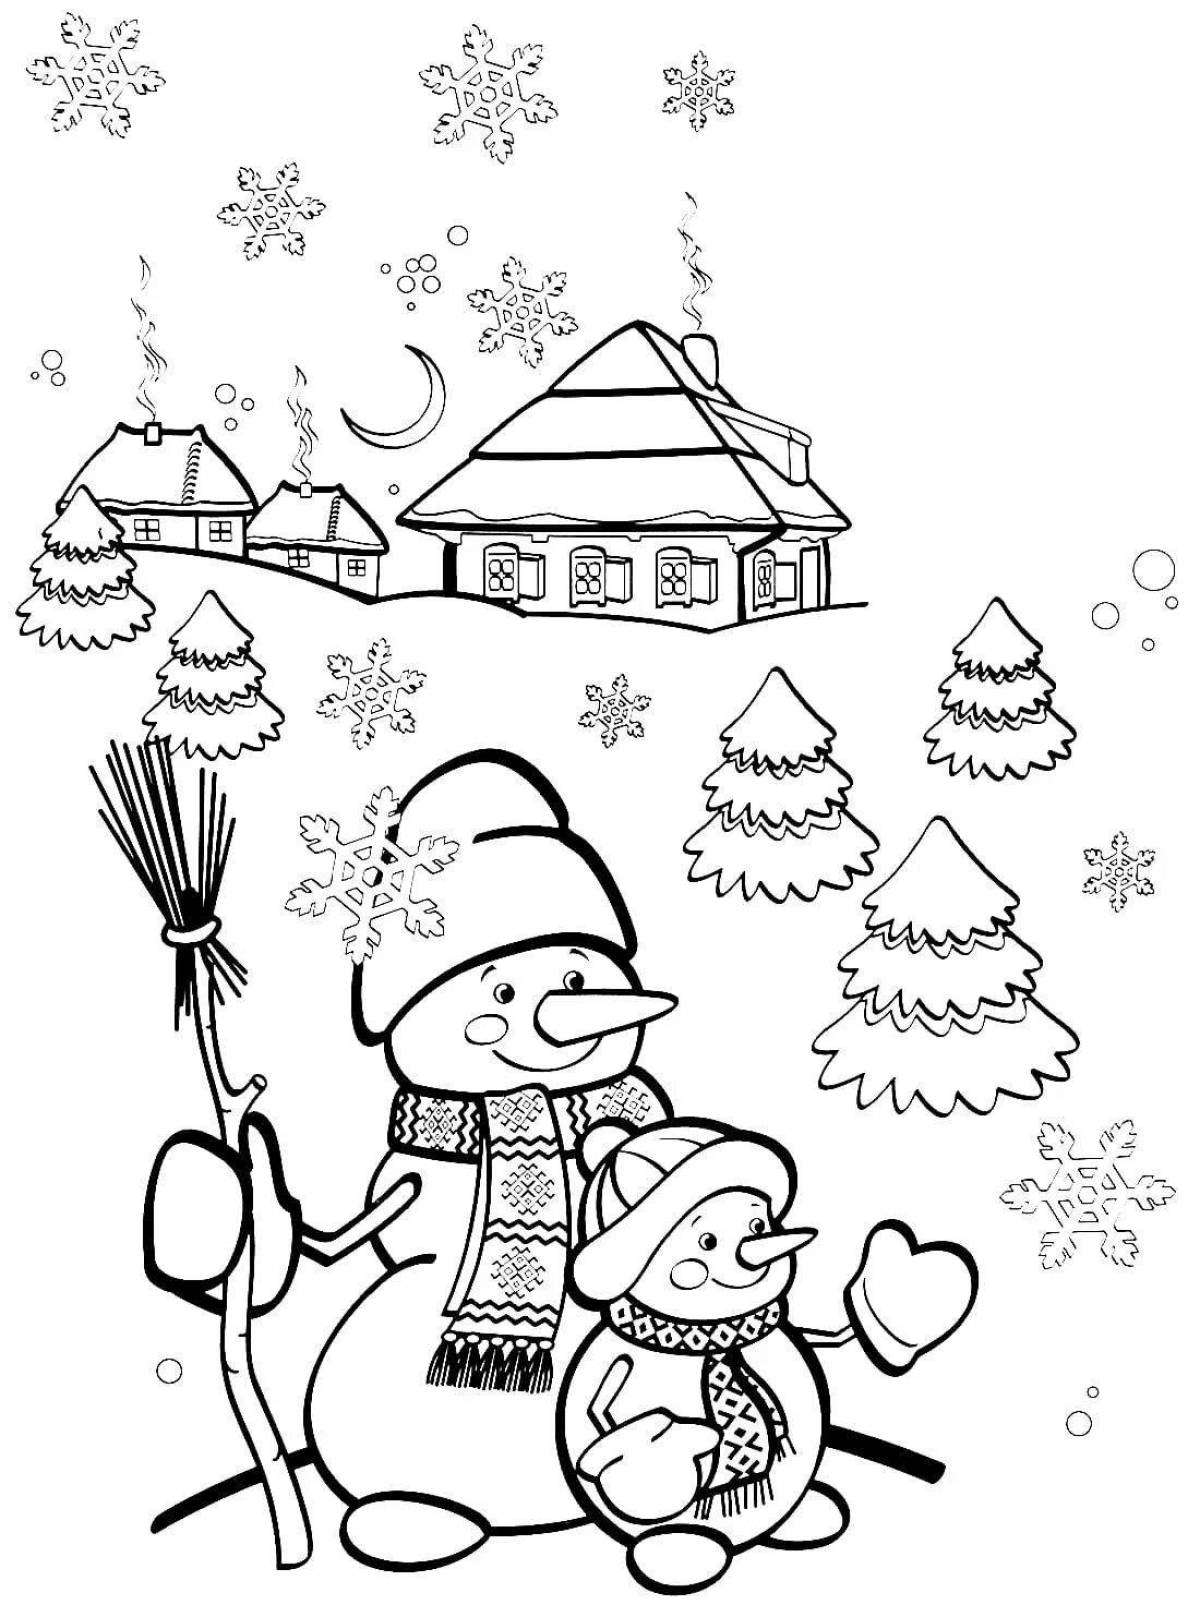 Herringbone and snowman #2